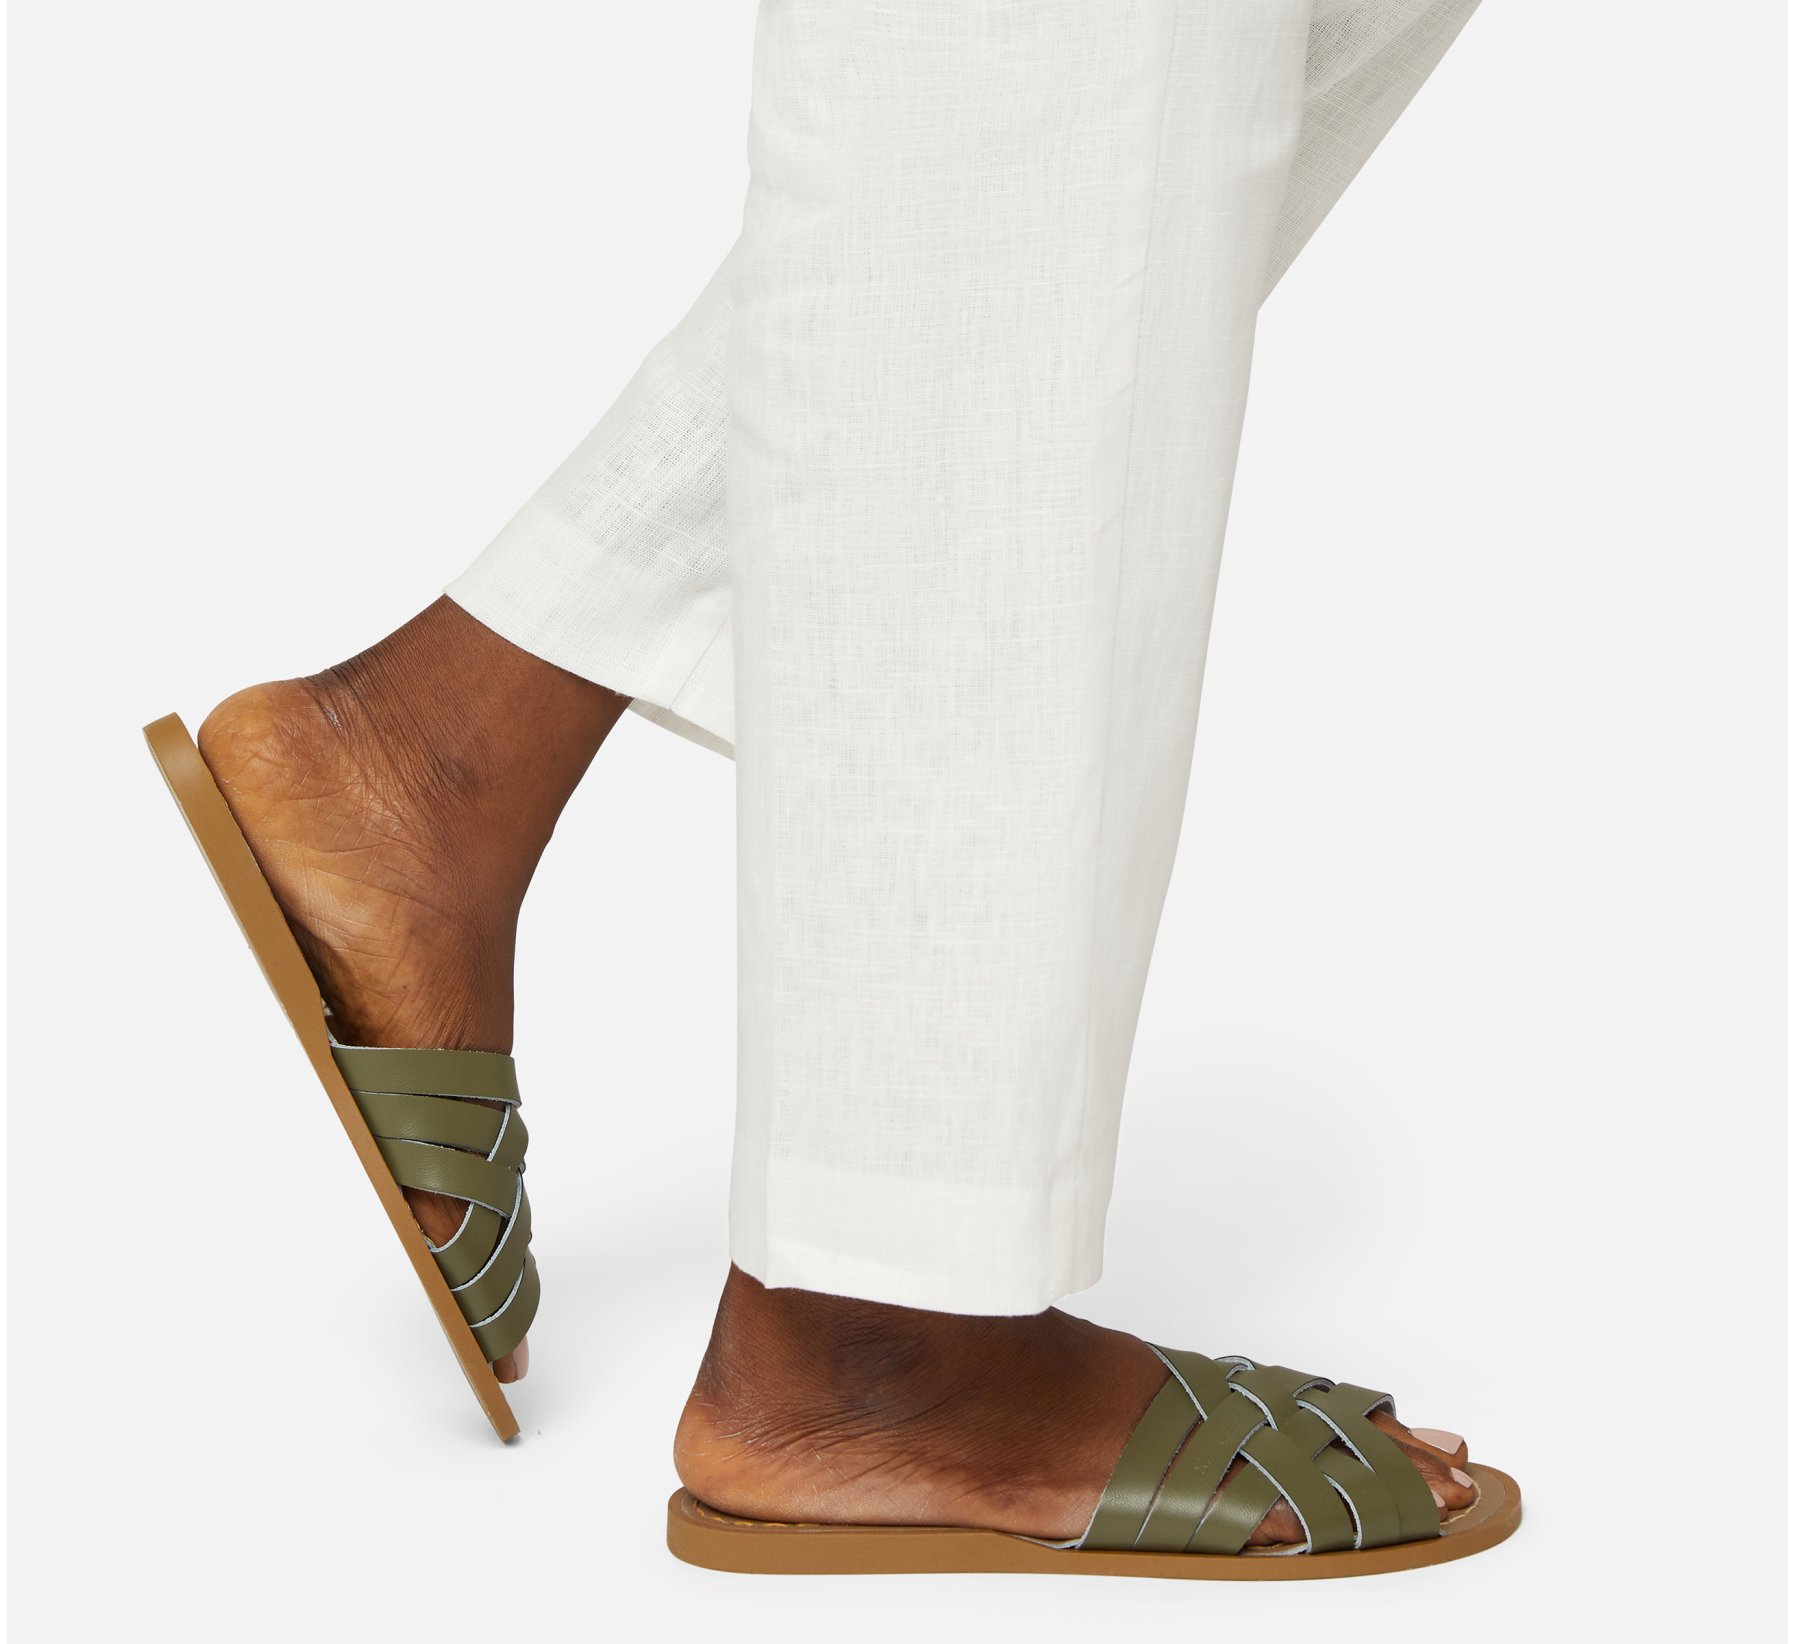 Retro Slide Olive Sandal - Salt Water Sandals